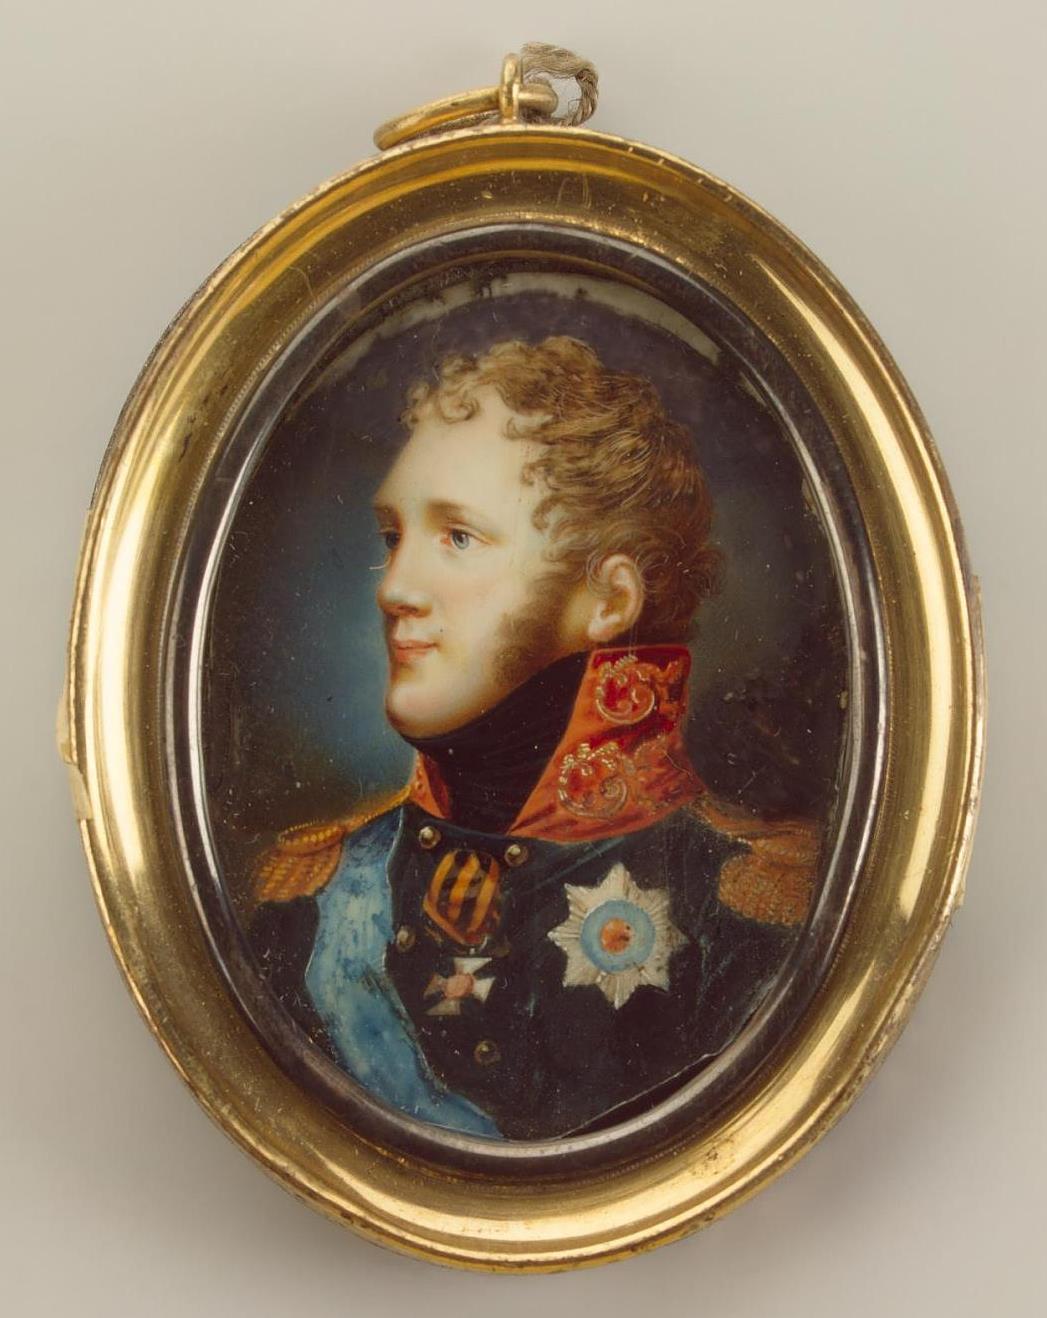 Неизвестный художник. "Портрет императора Александра I". 1820-е.